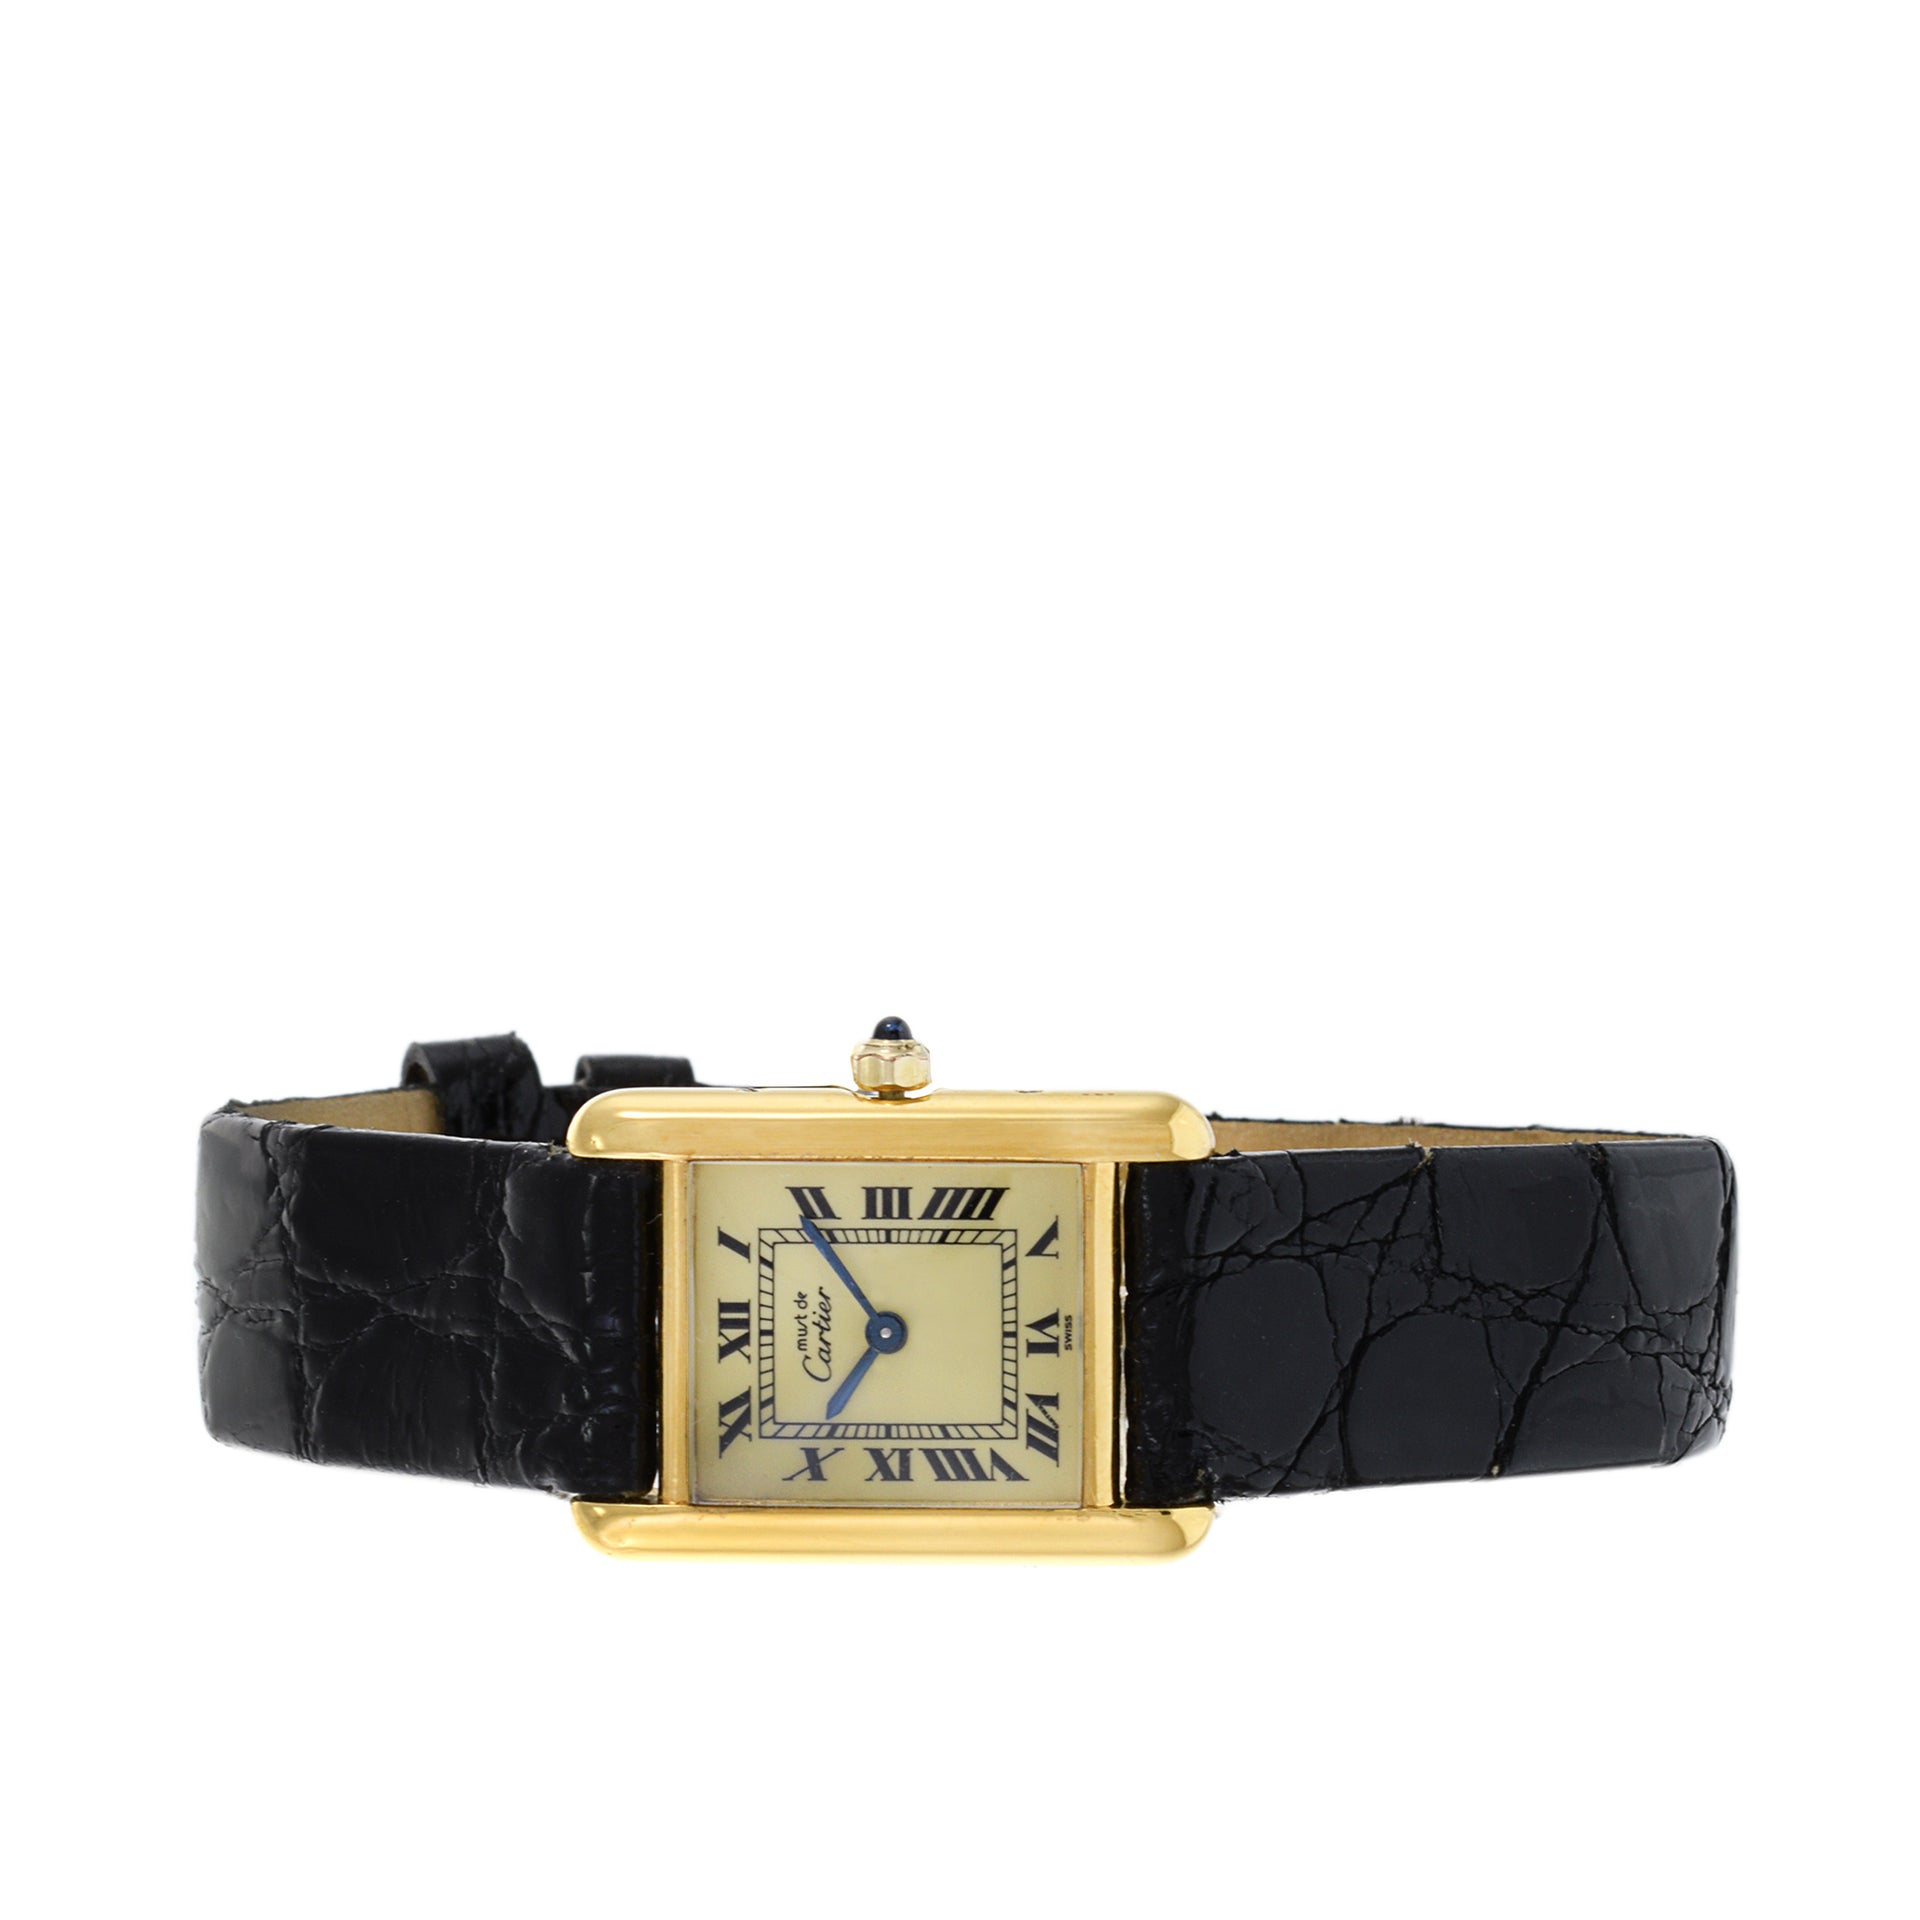 Must de Cartier Vermeil Quartz Tank Watch Reference 3 66001